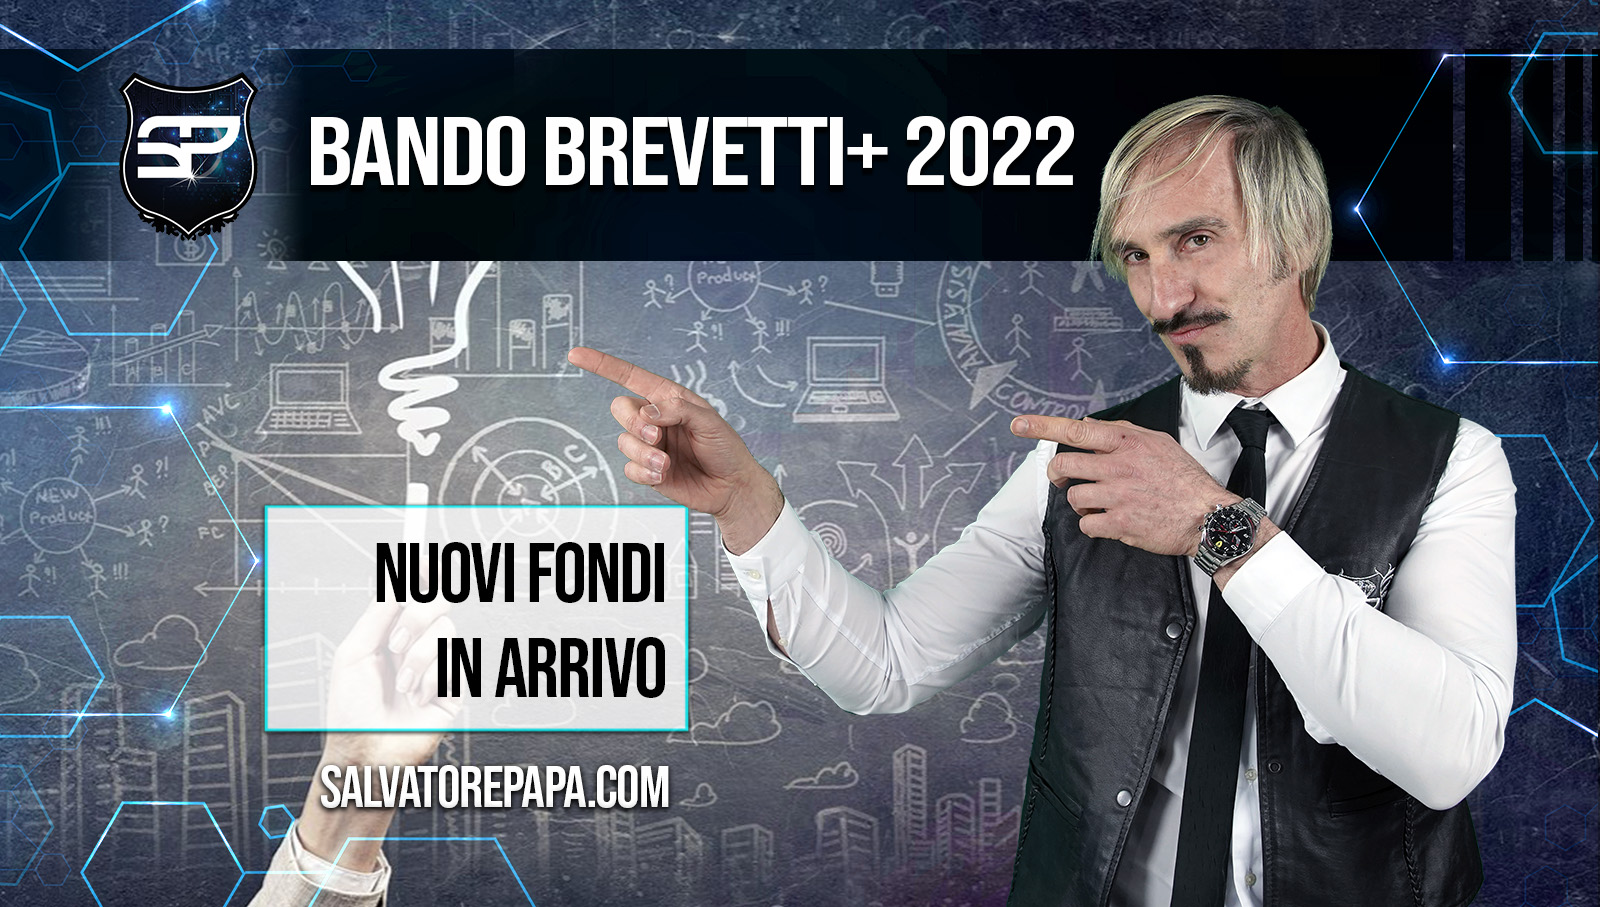 Bando_Brevetti+_2022